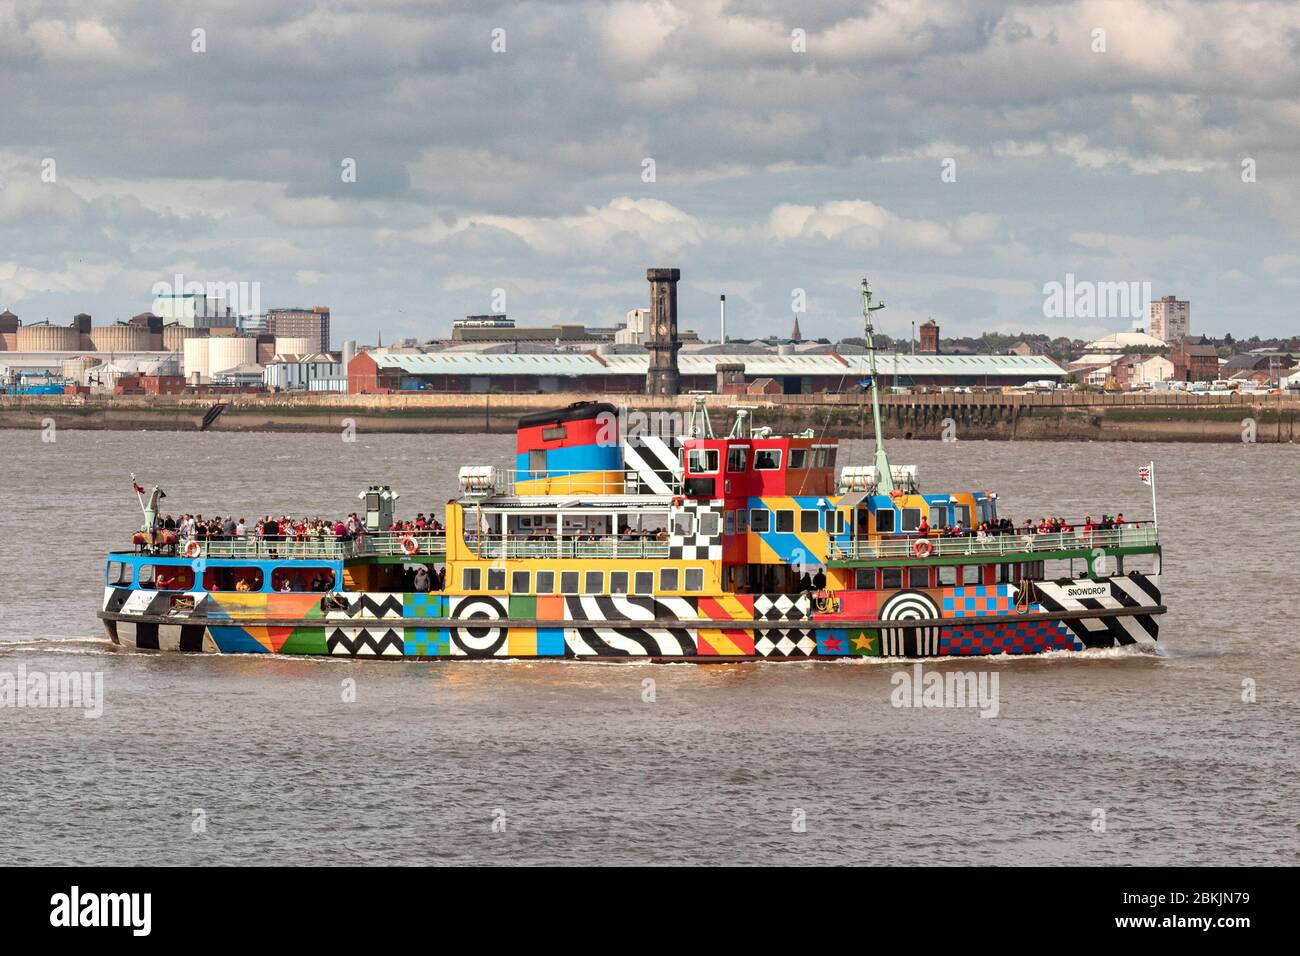 Il traghetto fluviale Mersey 'Stowdrop' in una livrea scintillanti disegnata da Sir Peter Blake contro lo skyline della città di Liverpool. Foto Stock